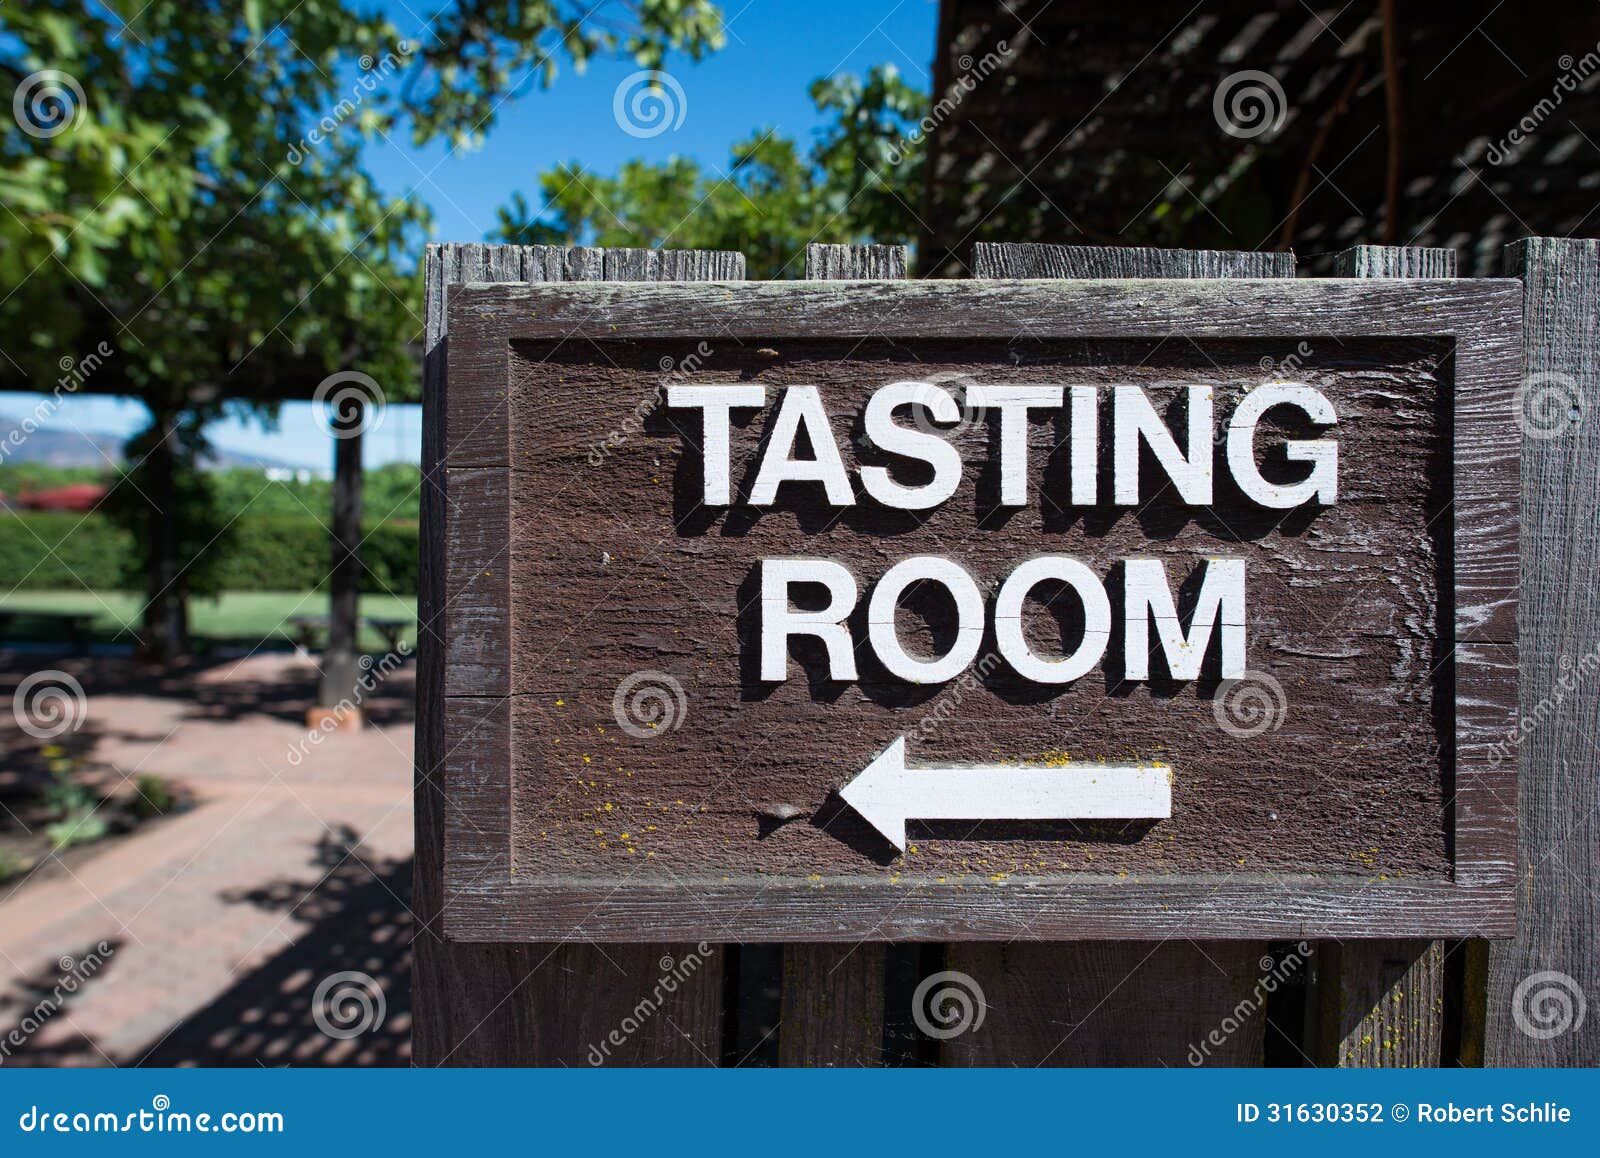 wine tasting room sign